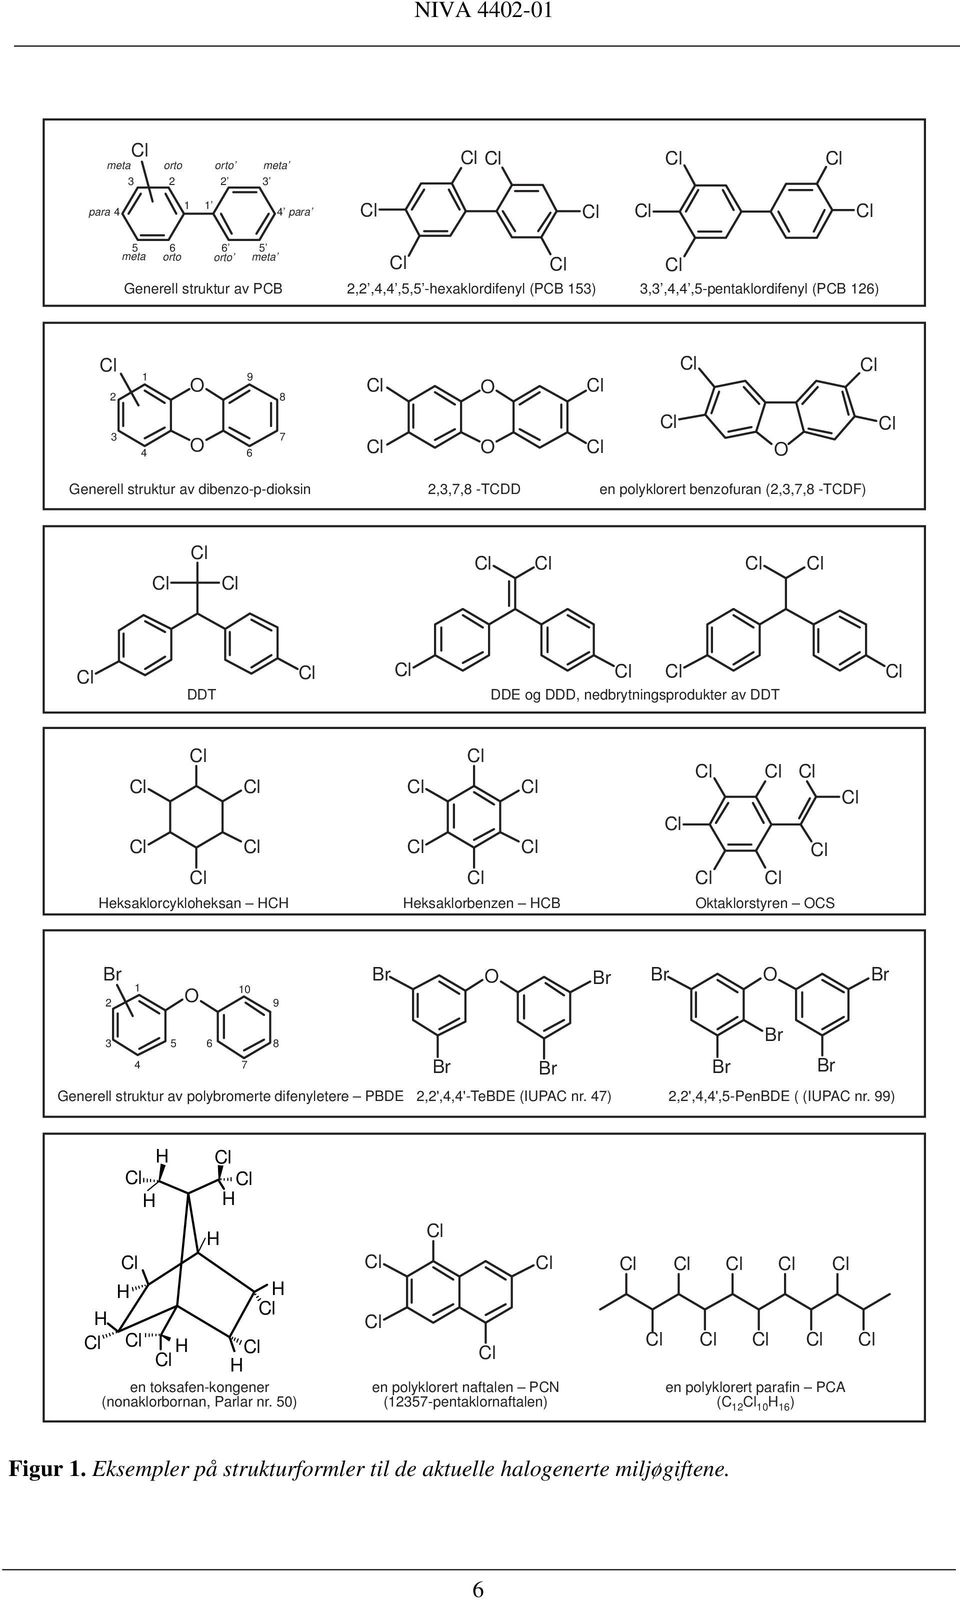 OCS Br 2 1 O 10 9 Br O Br Br O Br 3 5 6 8 4 7 Br Br Br Br Br Generell struktur av polybromerte difenyletere PBDE 2,2',4,4'-TeBDE (IUPAC nr. 47) 2,2',4,4',5-PenBDE ( (IUPAC nr.